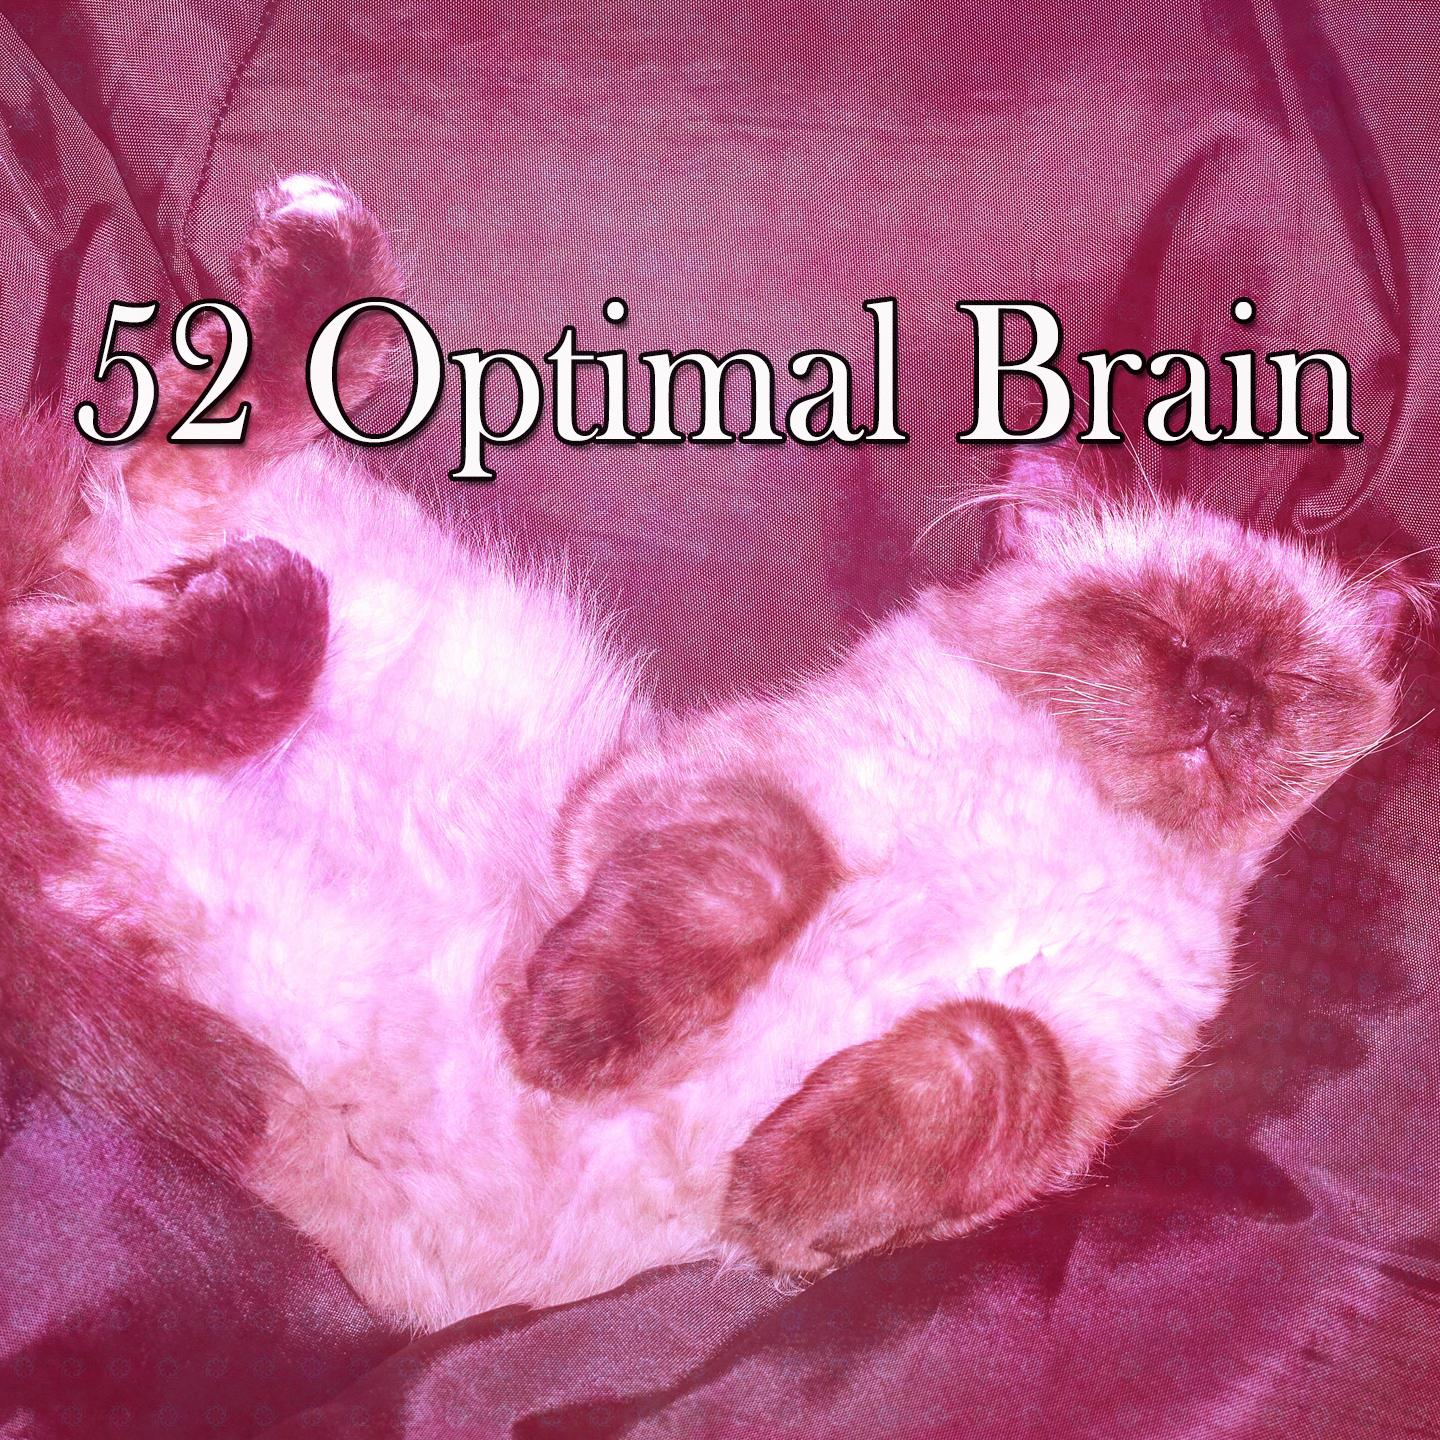 52 Optimal Brain